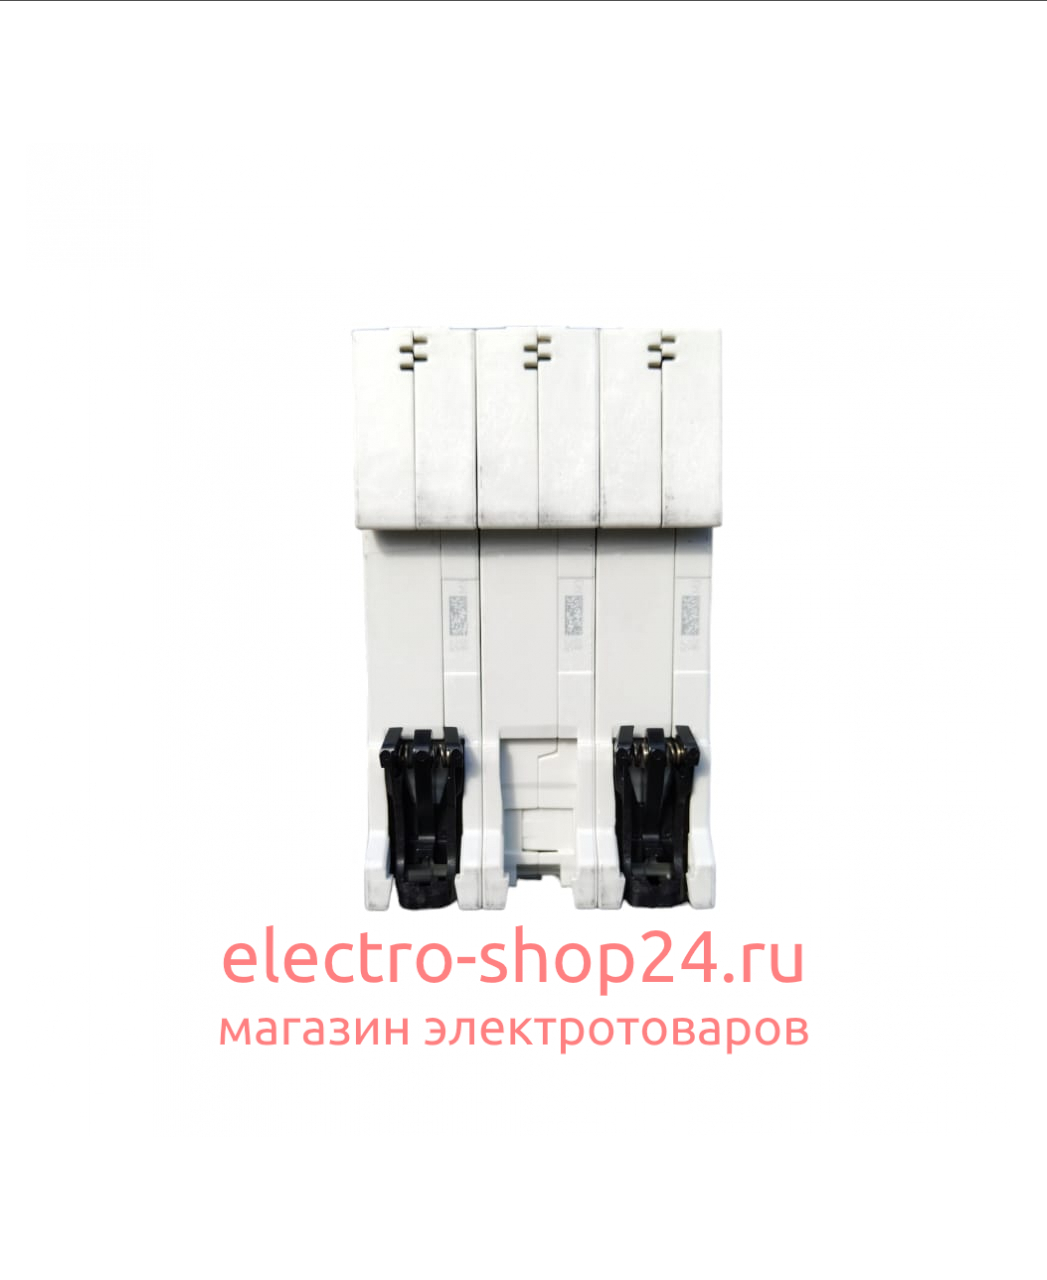 S203 C40 Автоматический выключатель 3-полюсный 40А 6кА (хар-ка C) ABB 2CDS253001R0404 2CDS253001R0404 - магазин электротехники Electroshop